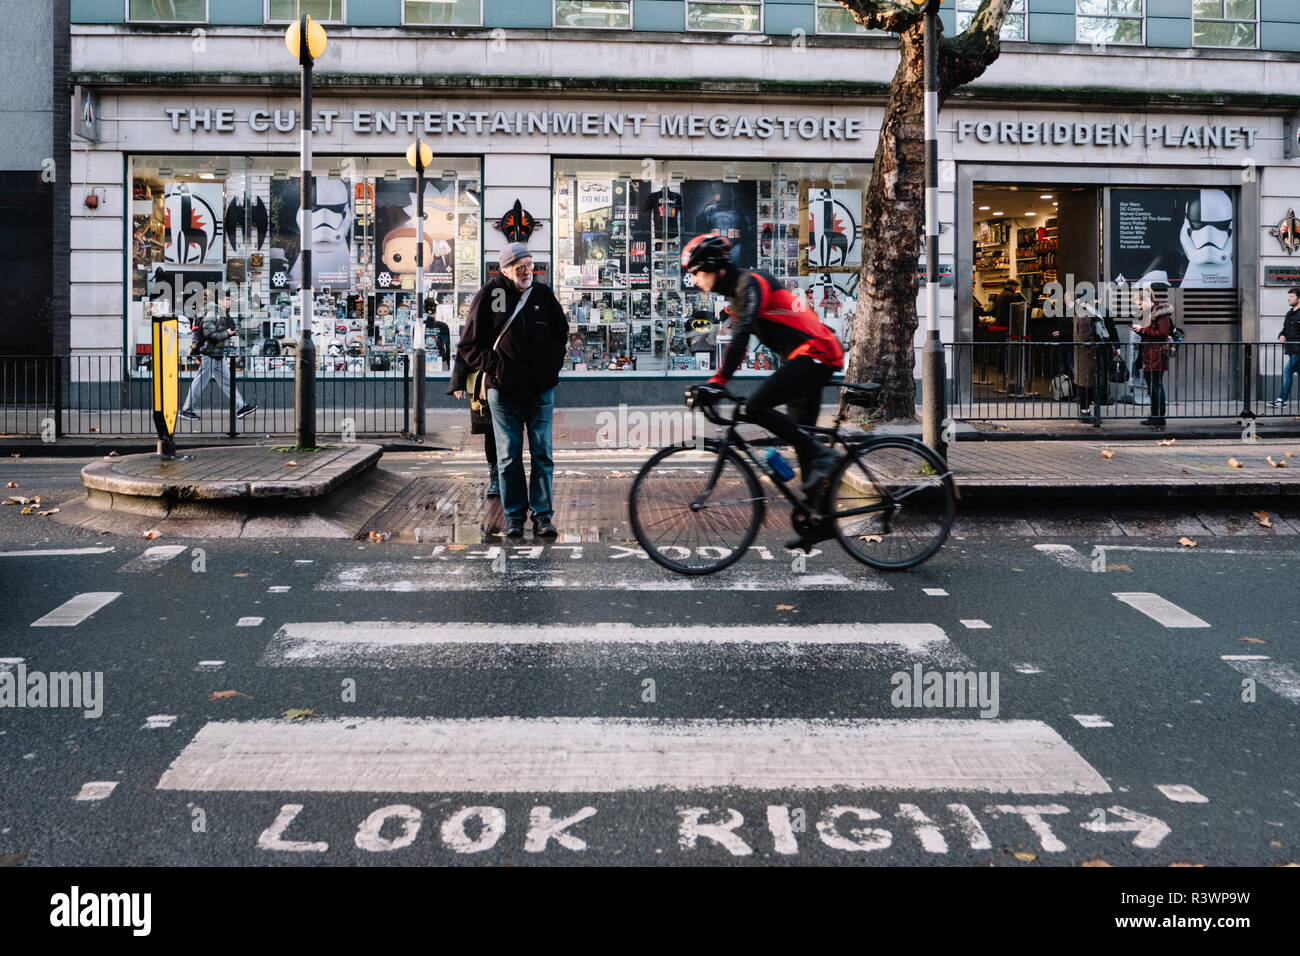 Farbe Bild von Zebrastreifen außerhalb Forbidden Planet shop in London mit einem Radfahrer und einem Fußgänger. Stockfoto